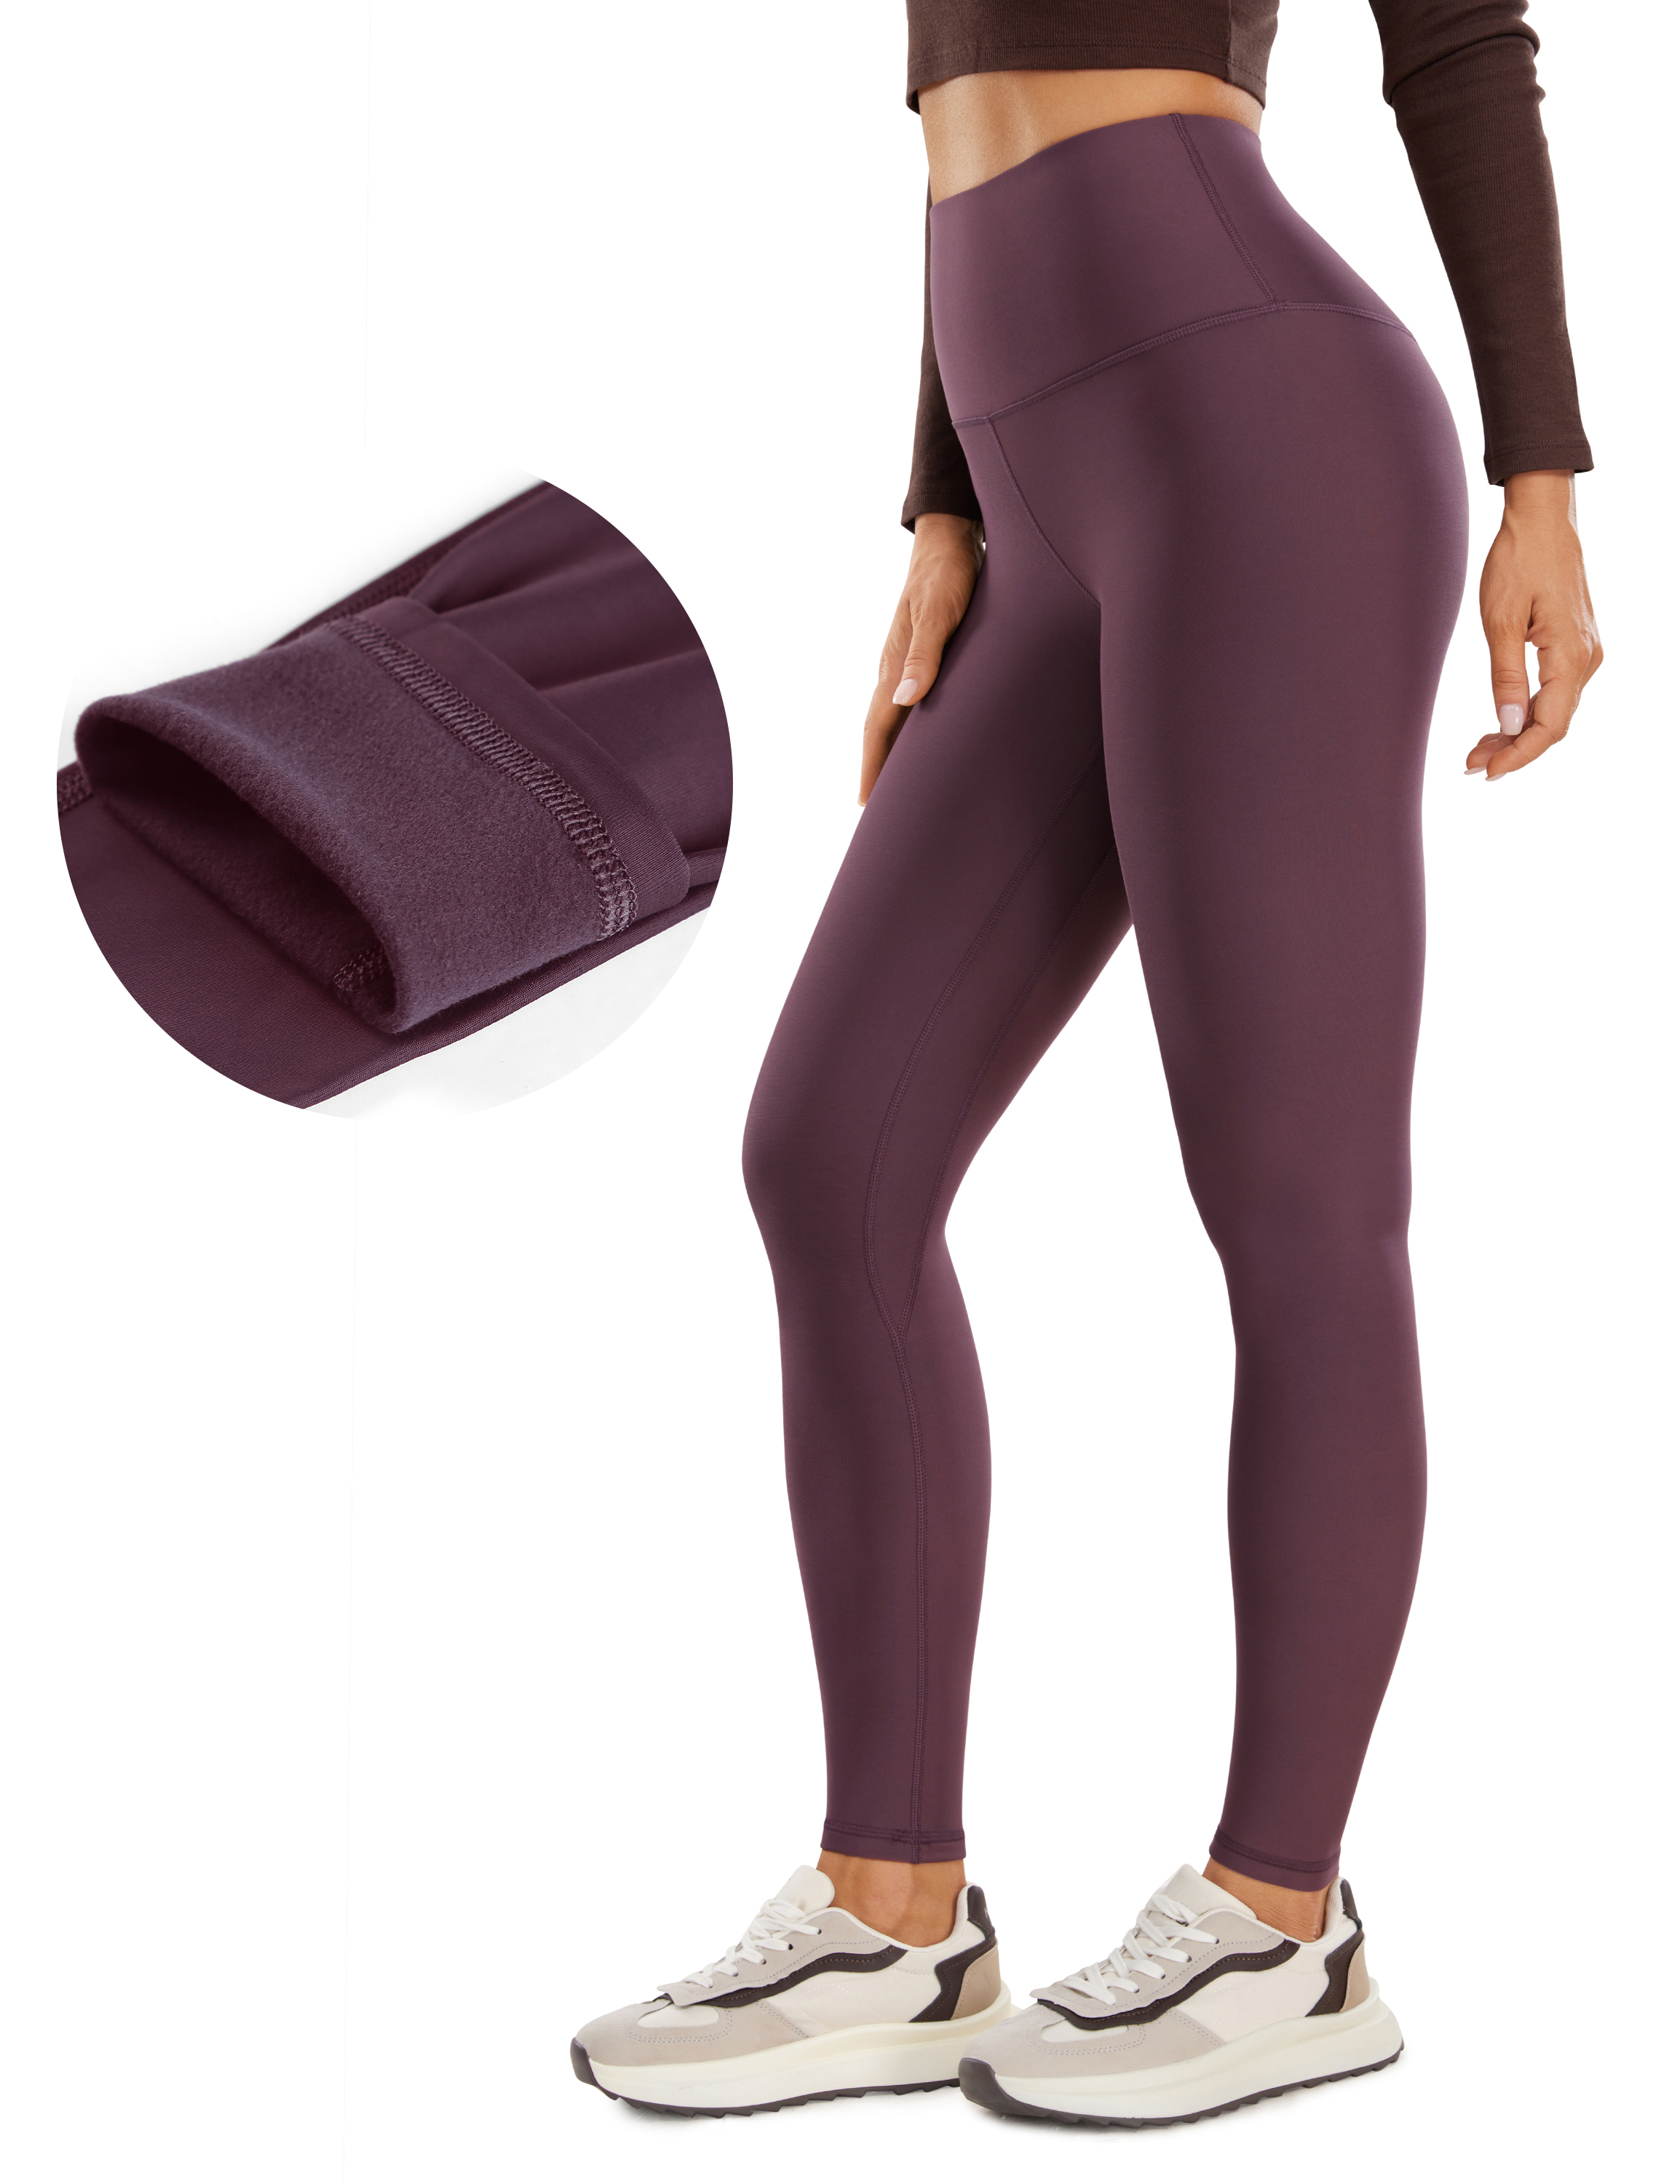 Buy CRZ YOGAWomen's Fleece Lined Leggings High Waist Thermal Yoga